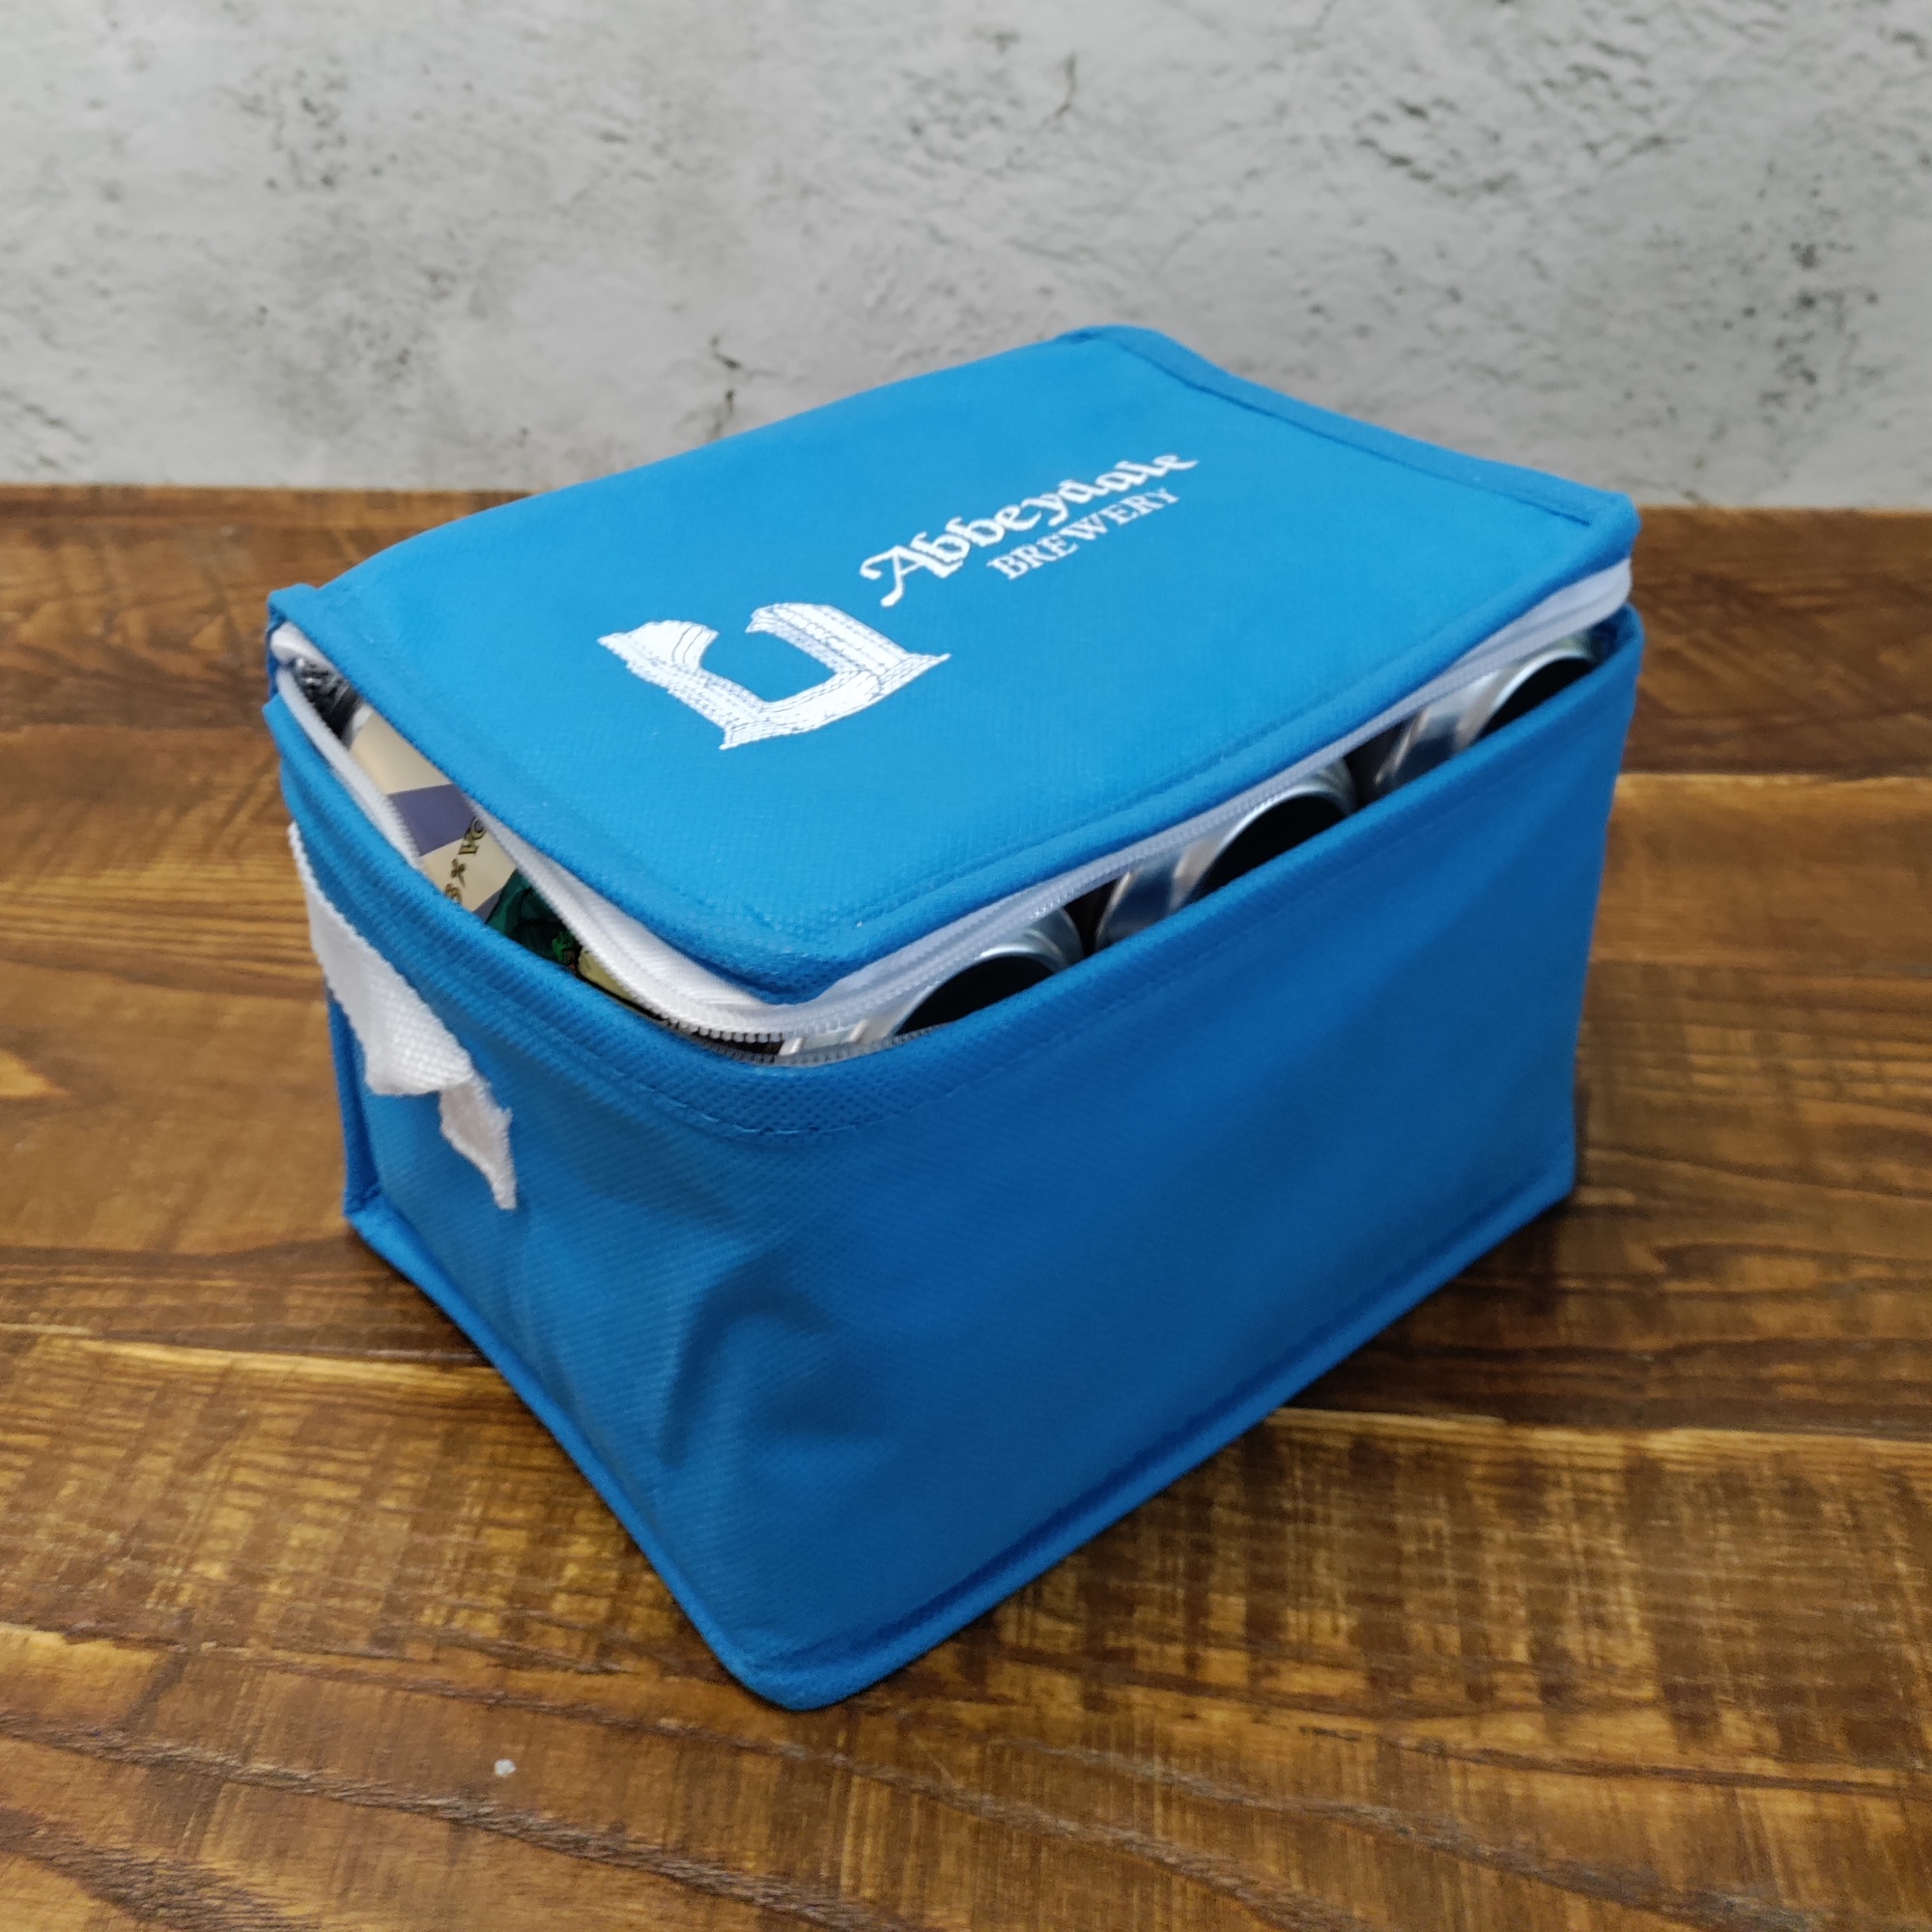 Bud Light Can Shaped Bluetooth Speaker Cooler Bag